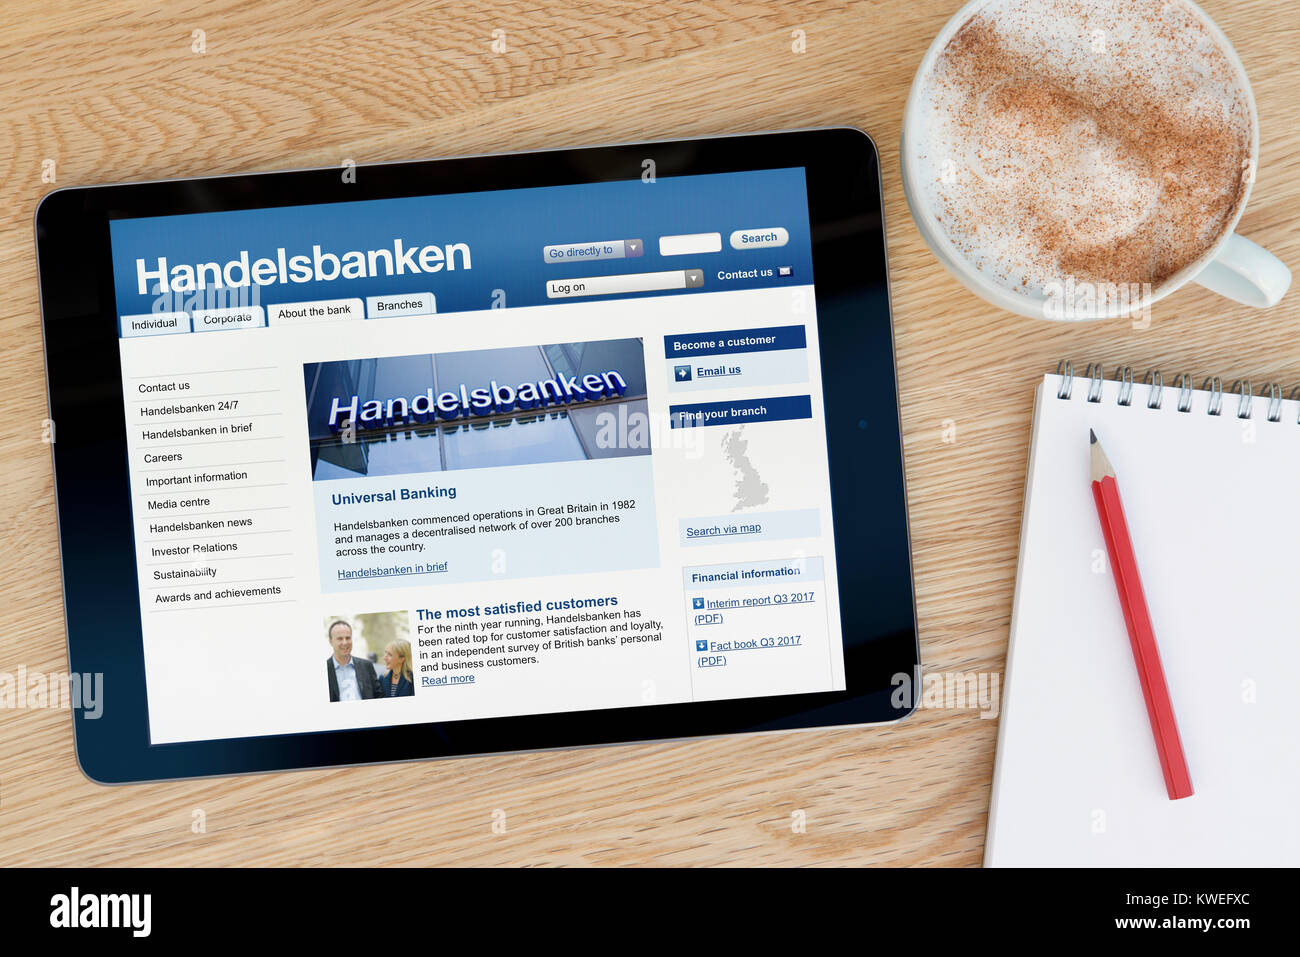 Die Handelsbanken Website auf einem iPad tablet device, ruht auf einem hölzernen Tisch neben einem Notizblock, Bleistift und Tasse Kaffee (nur redaktionell) Stockfoto